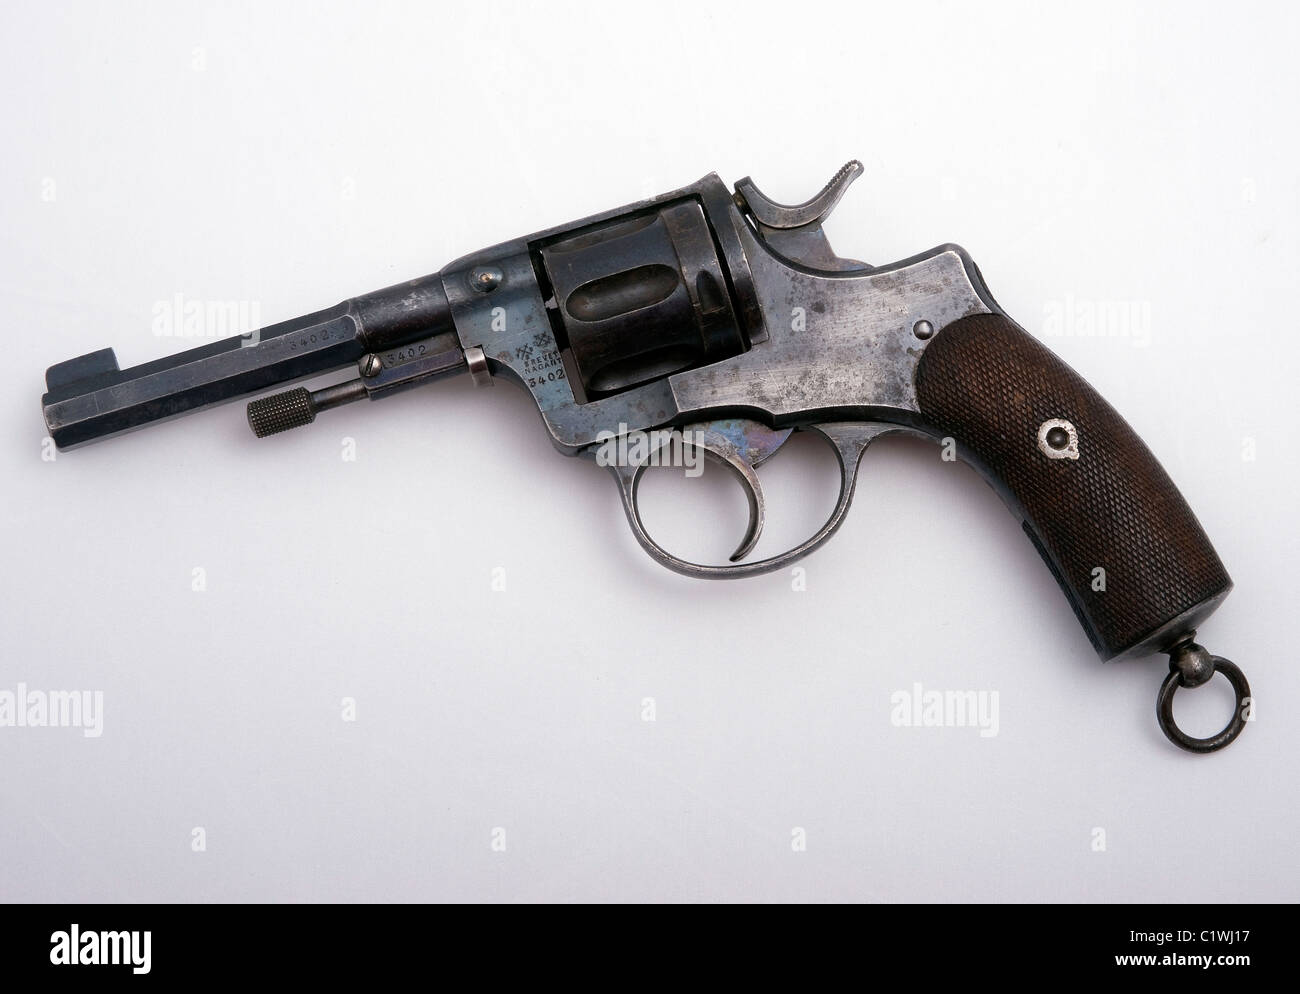 Nagant 1895 revolver in 7.62x38mm calibre Stock Photo